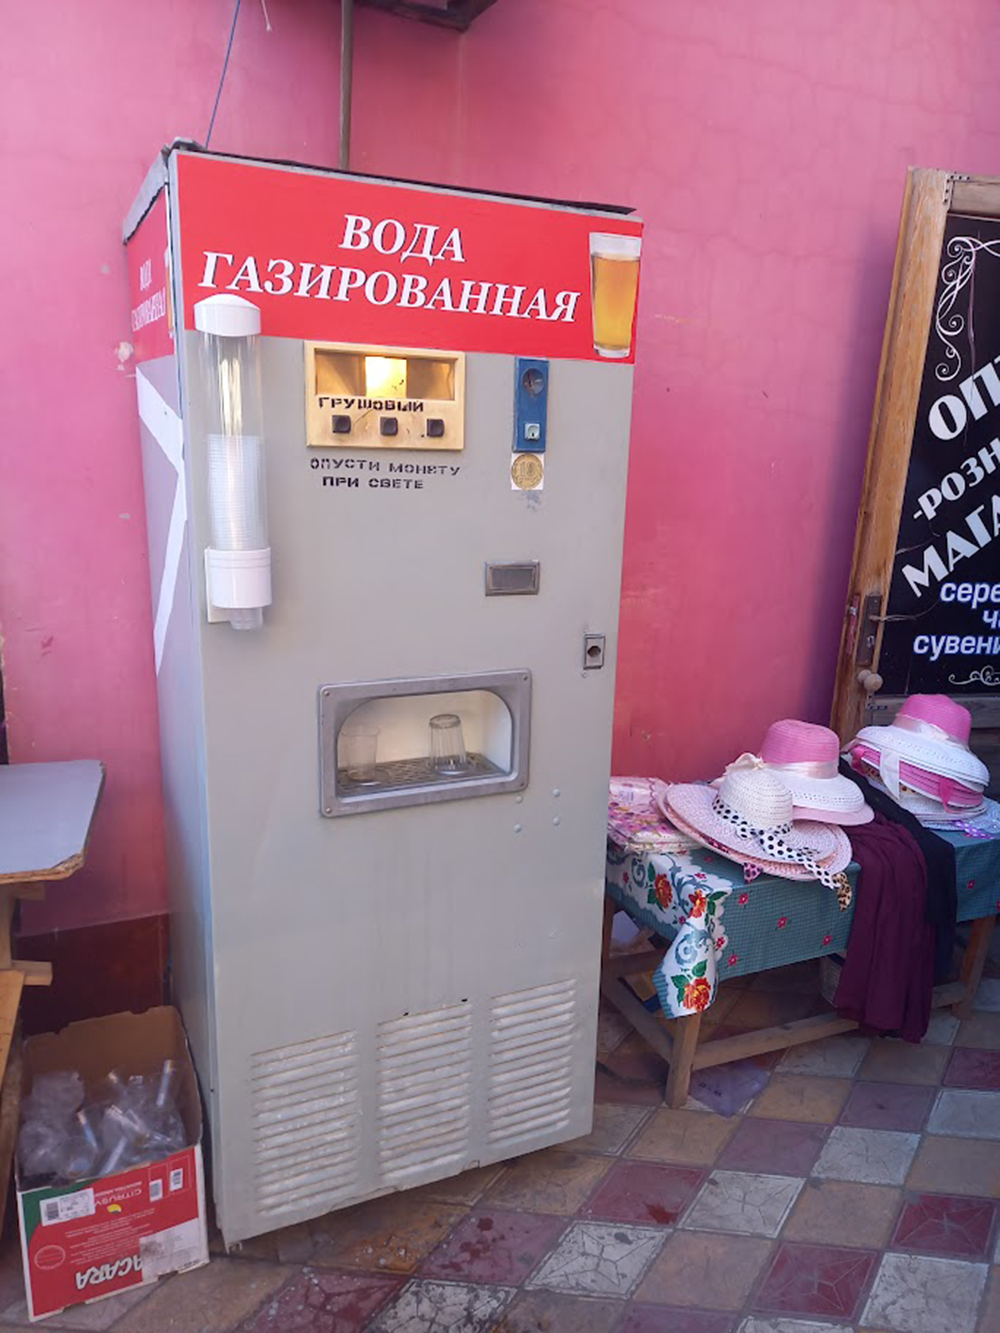 На рынке есть вот такая достопримечательность — автомат с газированной водой